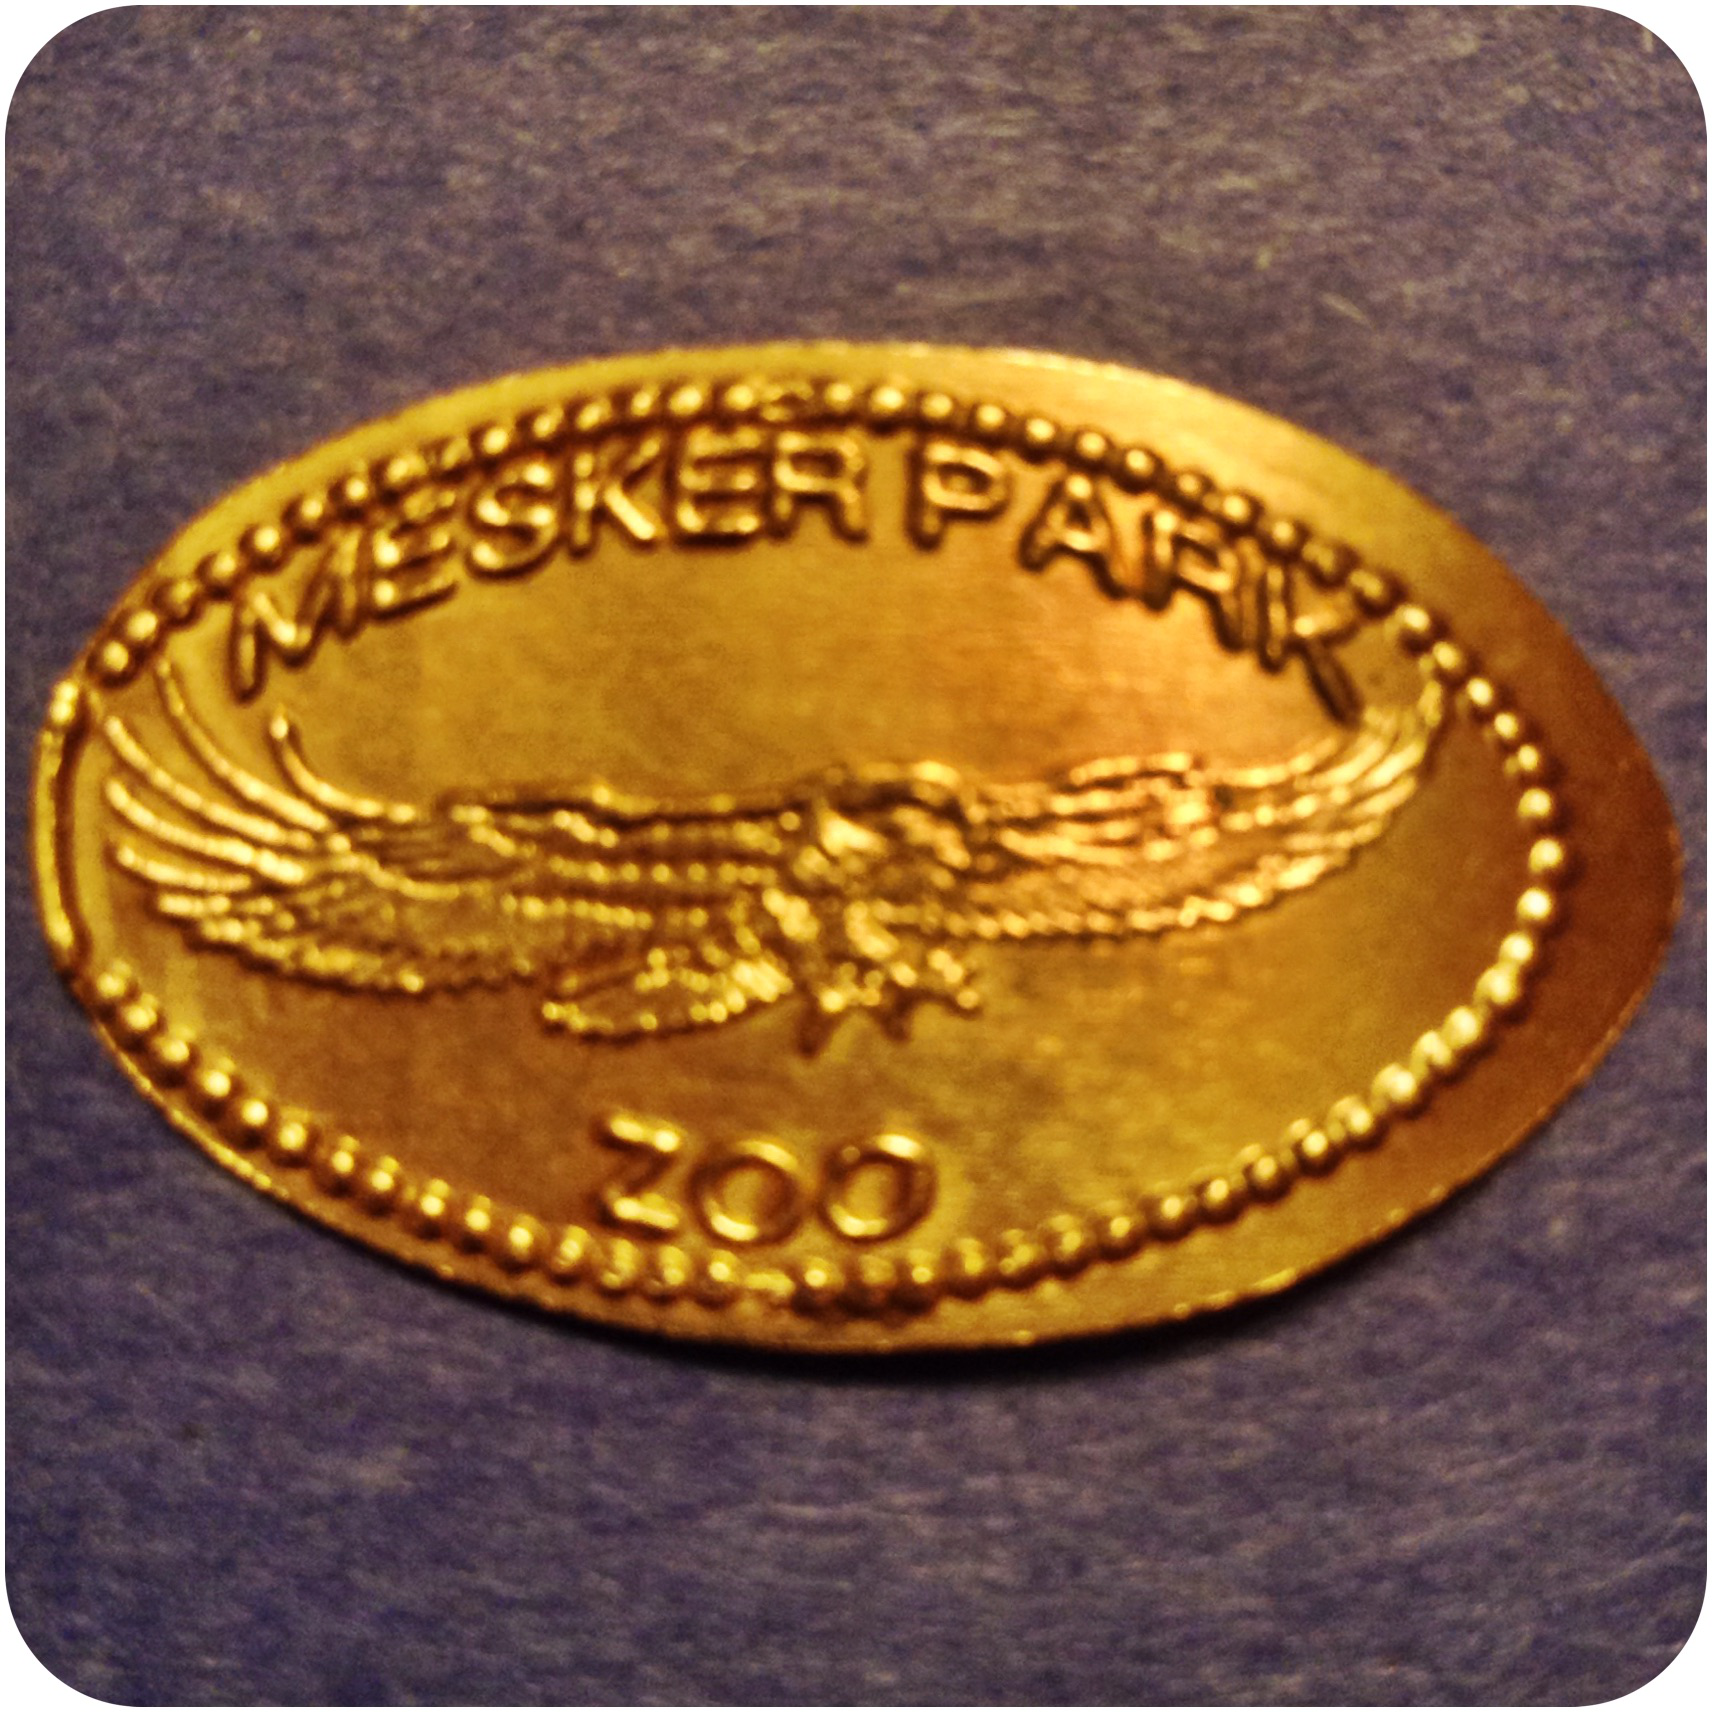 Flying Bald Eagle - Mesker Park Zoo & Botanic Garden, Evansville, Indiana Copper